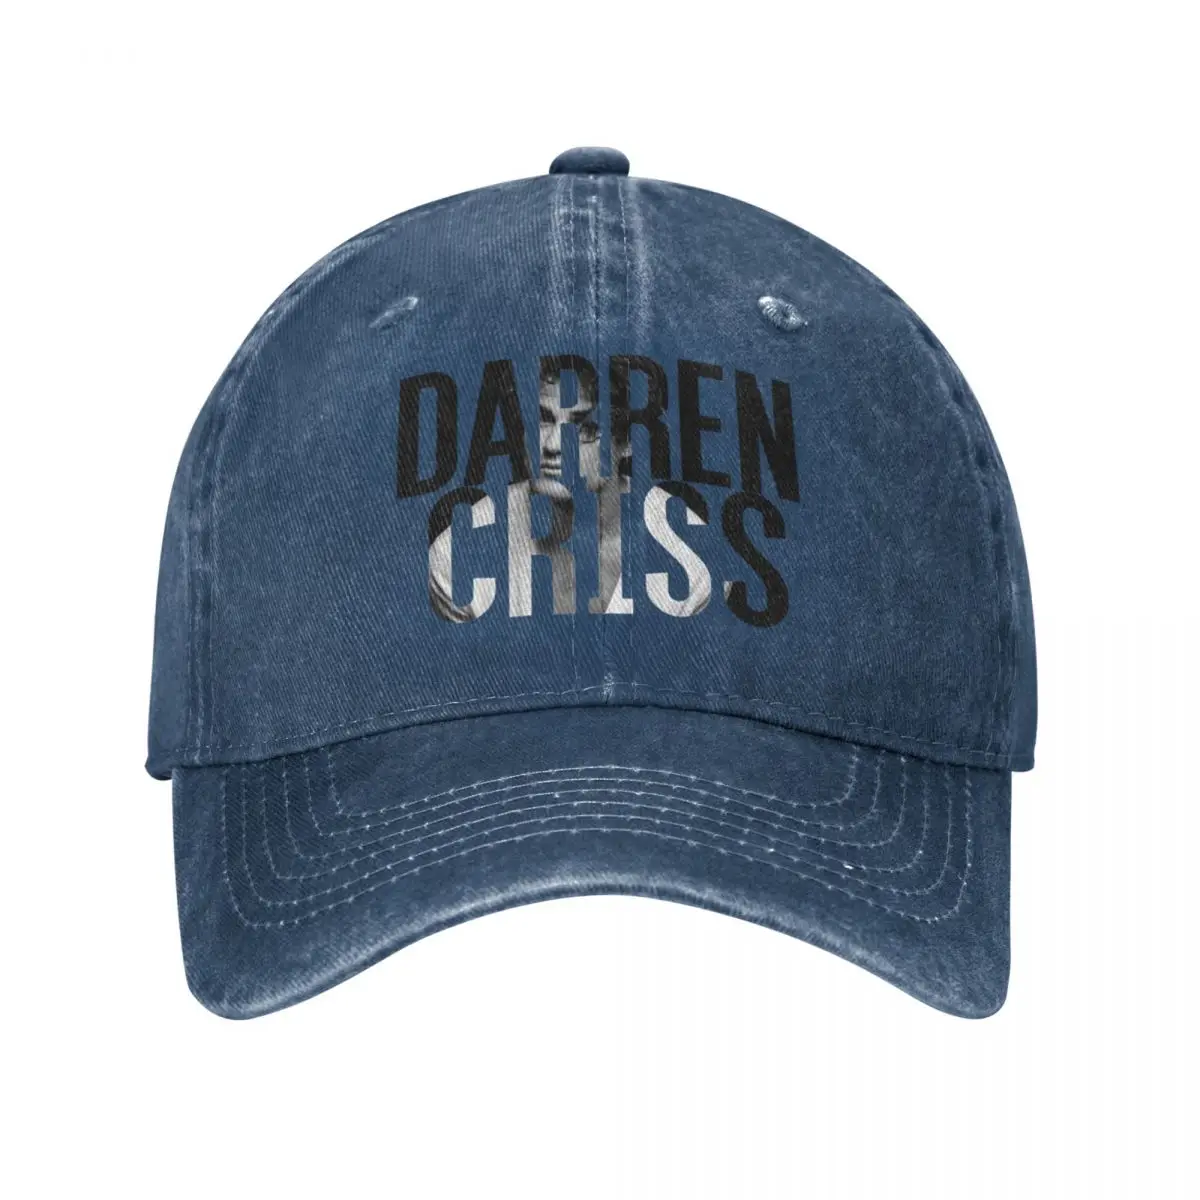 

Darren Criss Baseball Cap Caps Big Size Hat Cap Woman Men'S